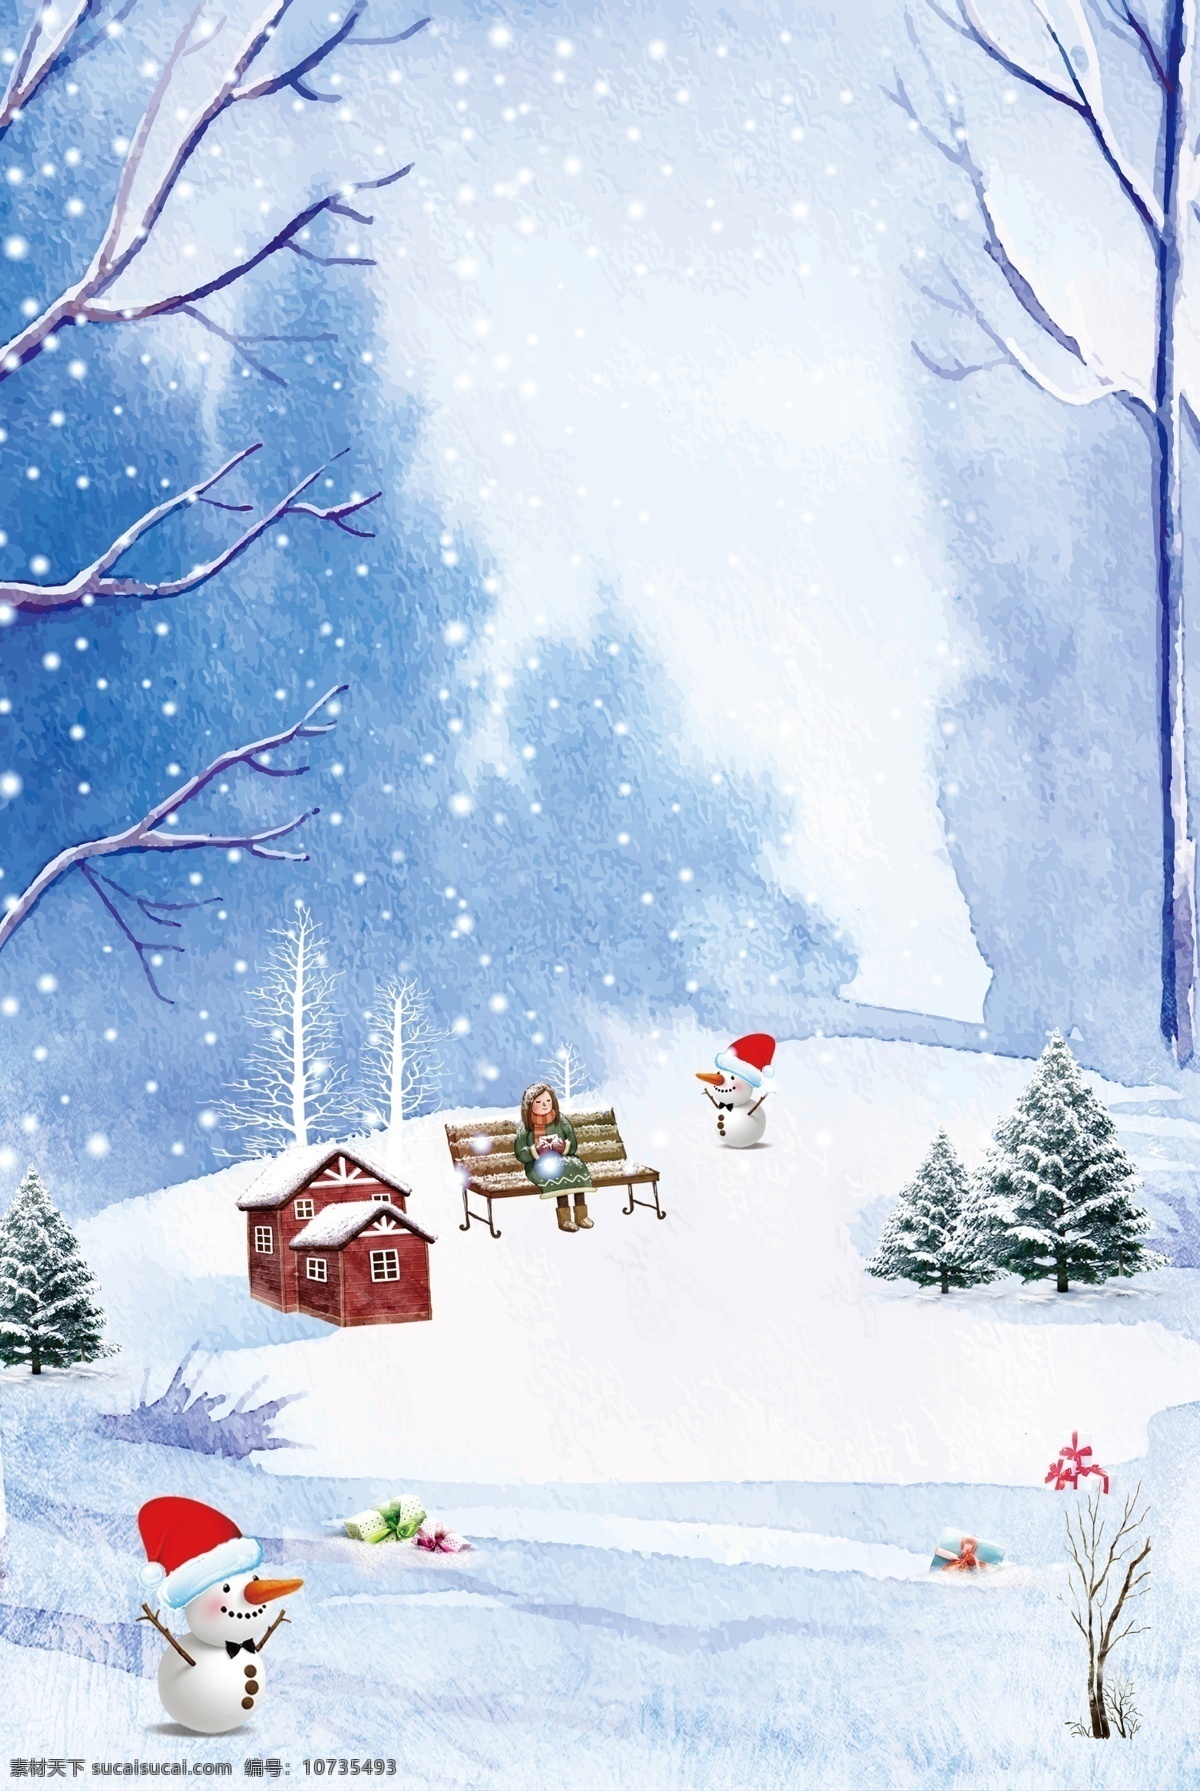 冬季 圣诞节 雪地 背景 滑雪 冬天 旅游 背景设计 长椅 小屋 圣诞 雪人 滑雪场 冬季素材 冰雪 冬季活动背景 彩绘